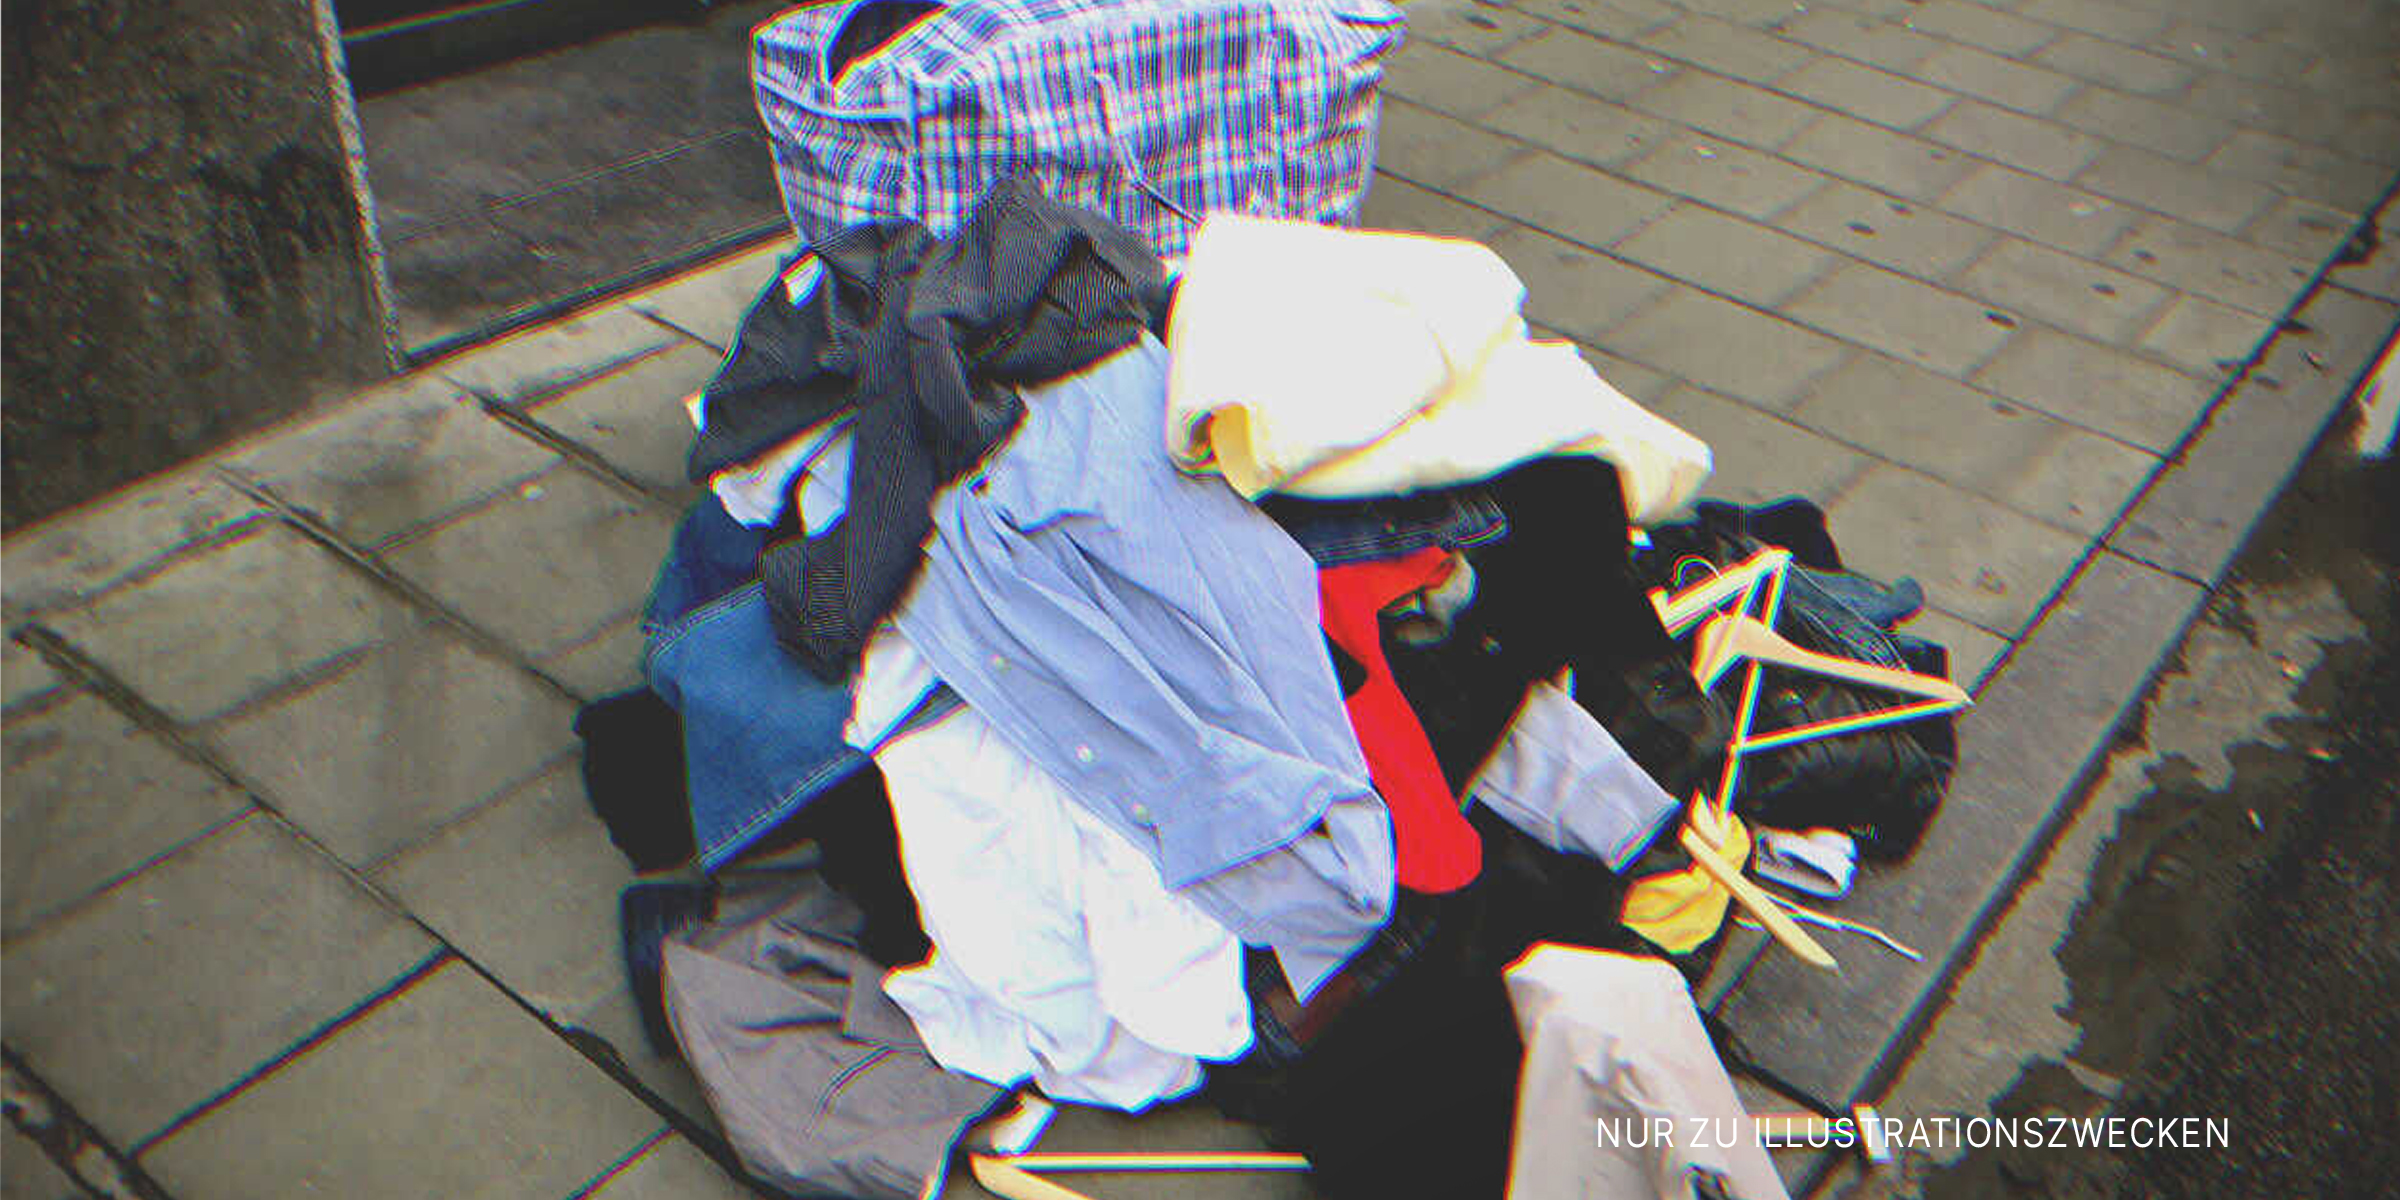 Kleiderstapel auf dem Bürgersteig. | Quelle: Shutterstock